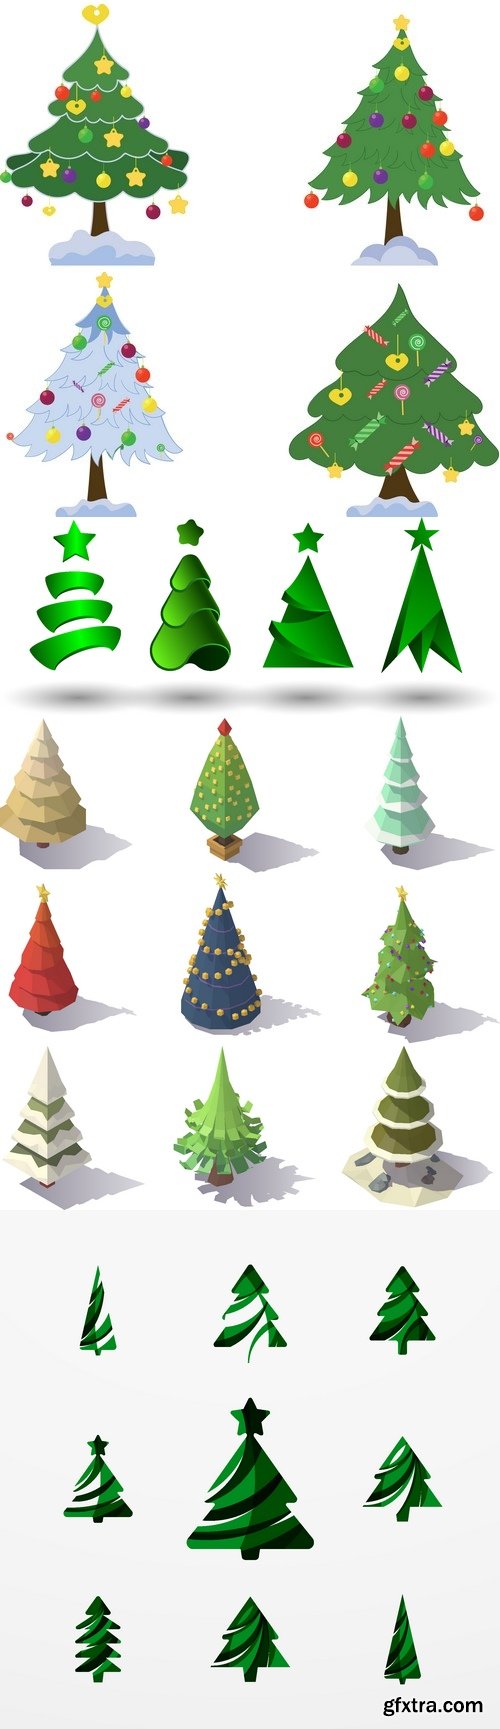 Vectors - Creative Christmas Trees Set 10